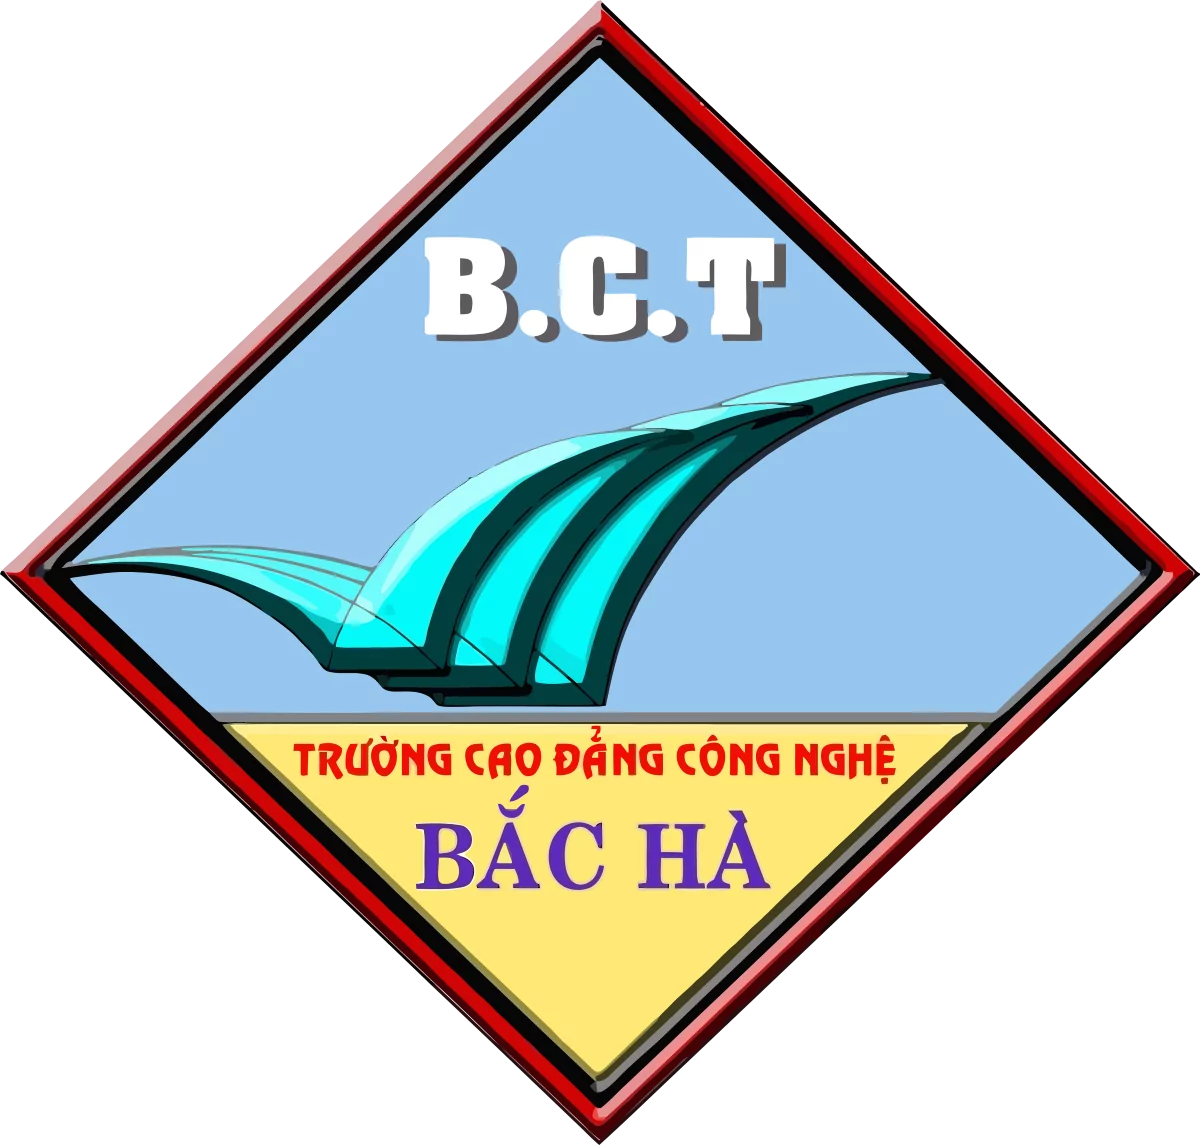 Logo Cao dang Cong nghe Bac Ha BCT